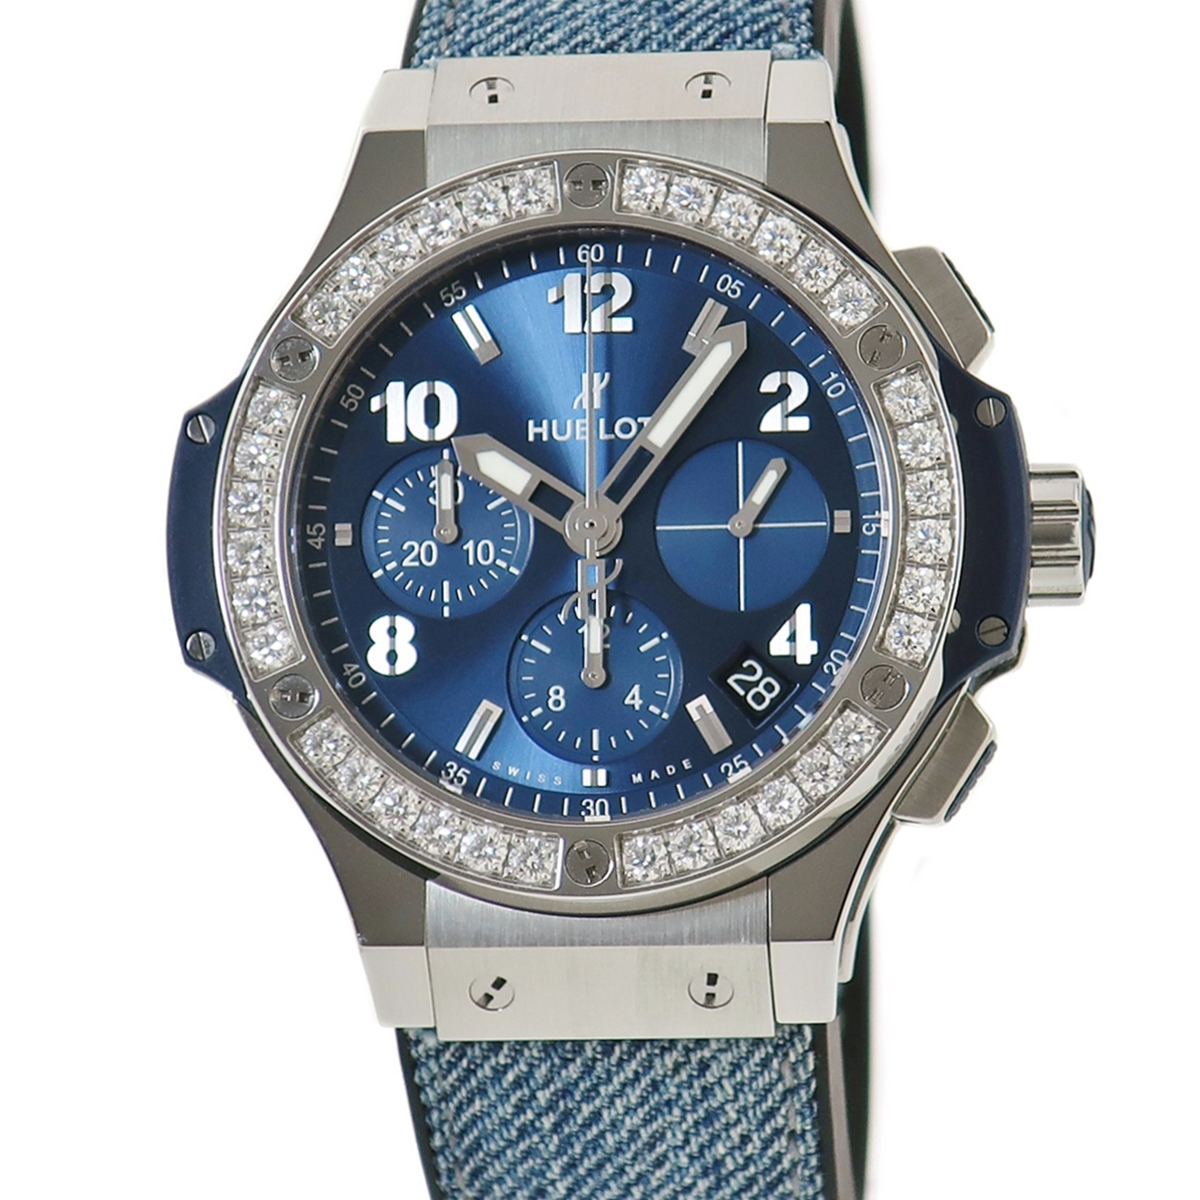 【3年保証】 ウブロ ビッグバン スチール ブルー ダイヤモンド 341.SX.7170.LR.1204 純正ダイヤ 青サンレイ 自動巻き メンズ 腕時計